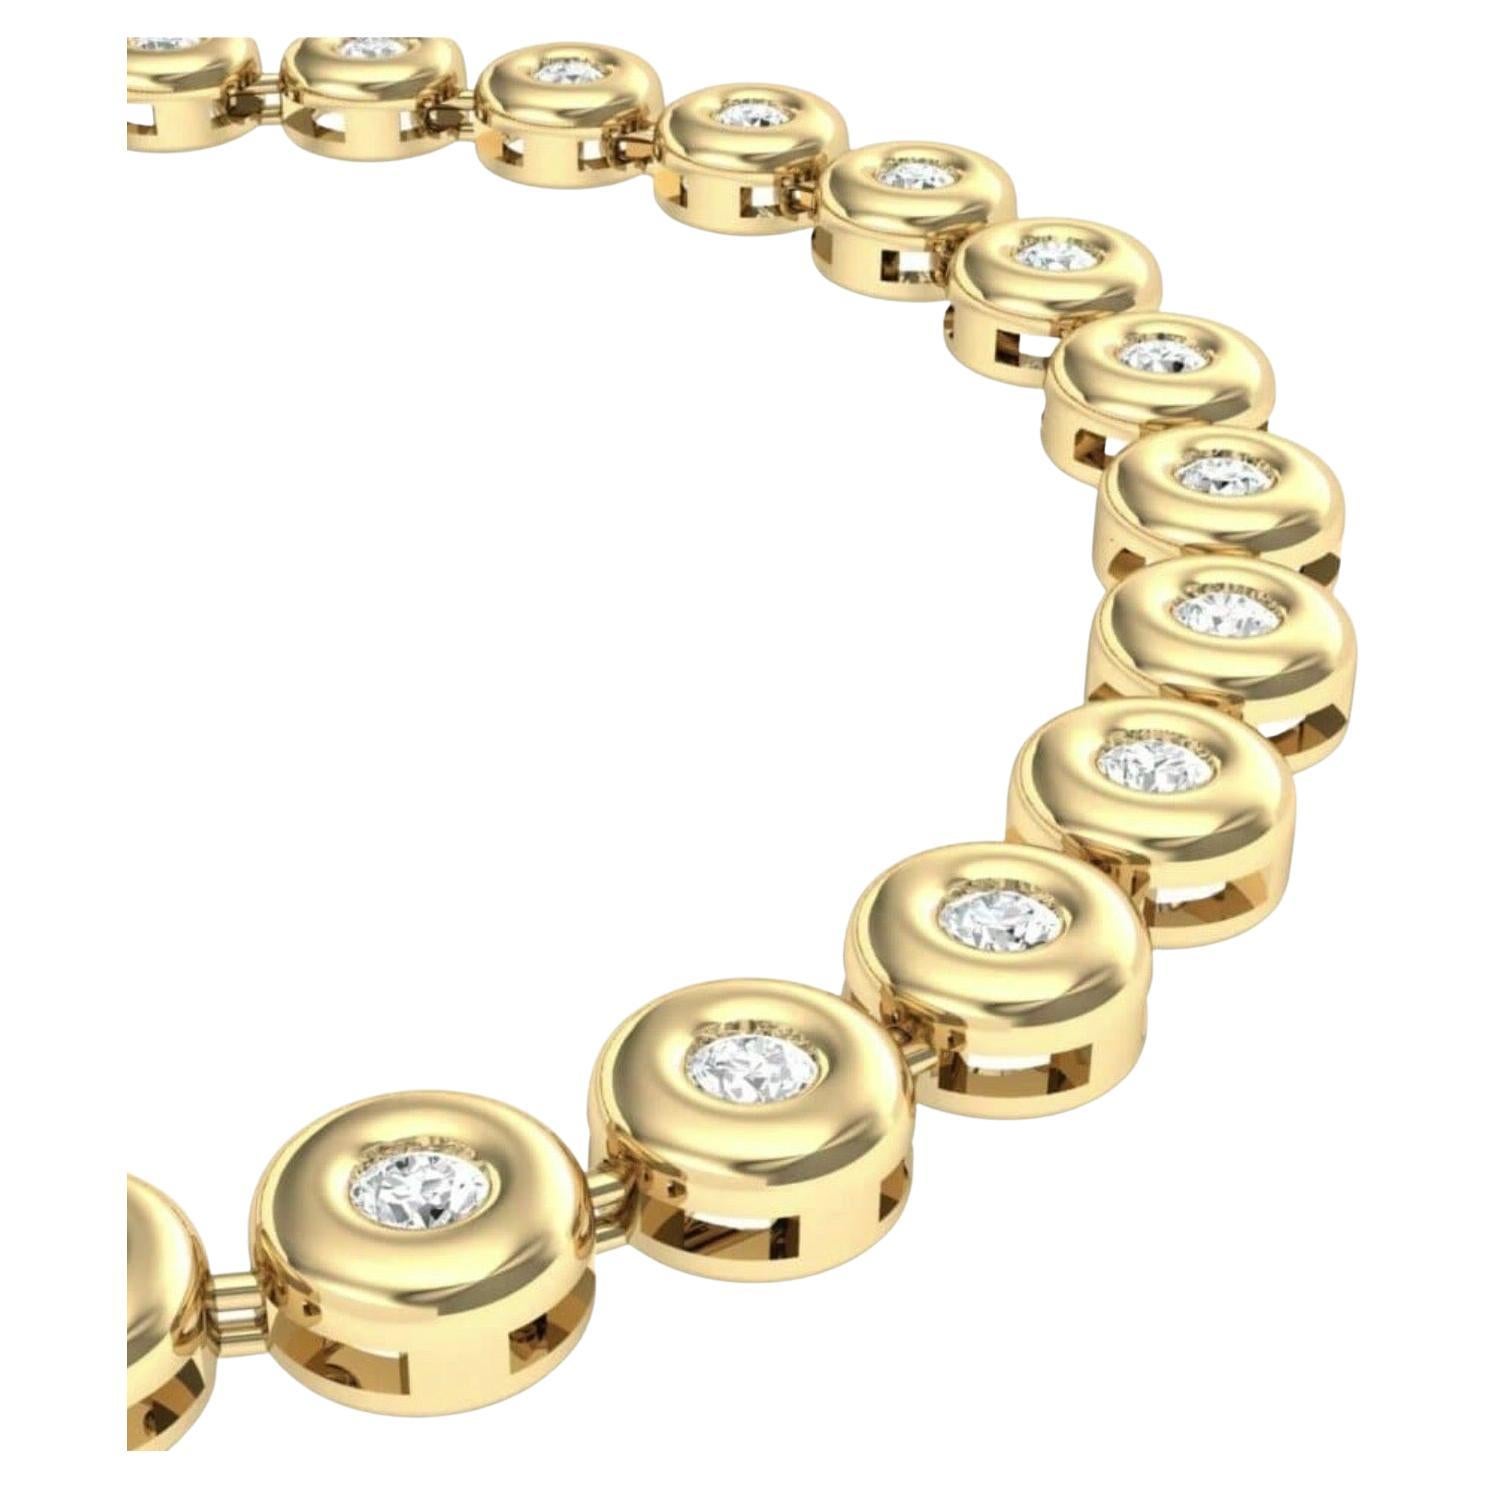 Brilliant Cut Round 6 Pointer, 4.5Ct Diamond Tennis Necklace 18Karat Yellow Gold 52 Gm, Unisex